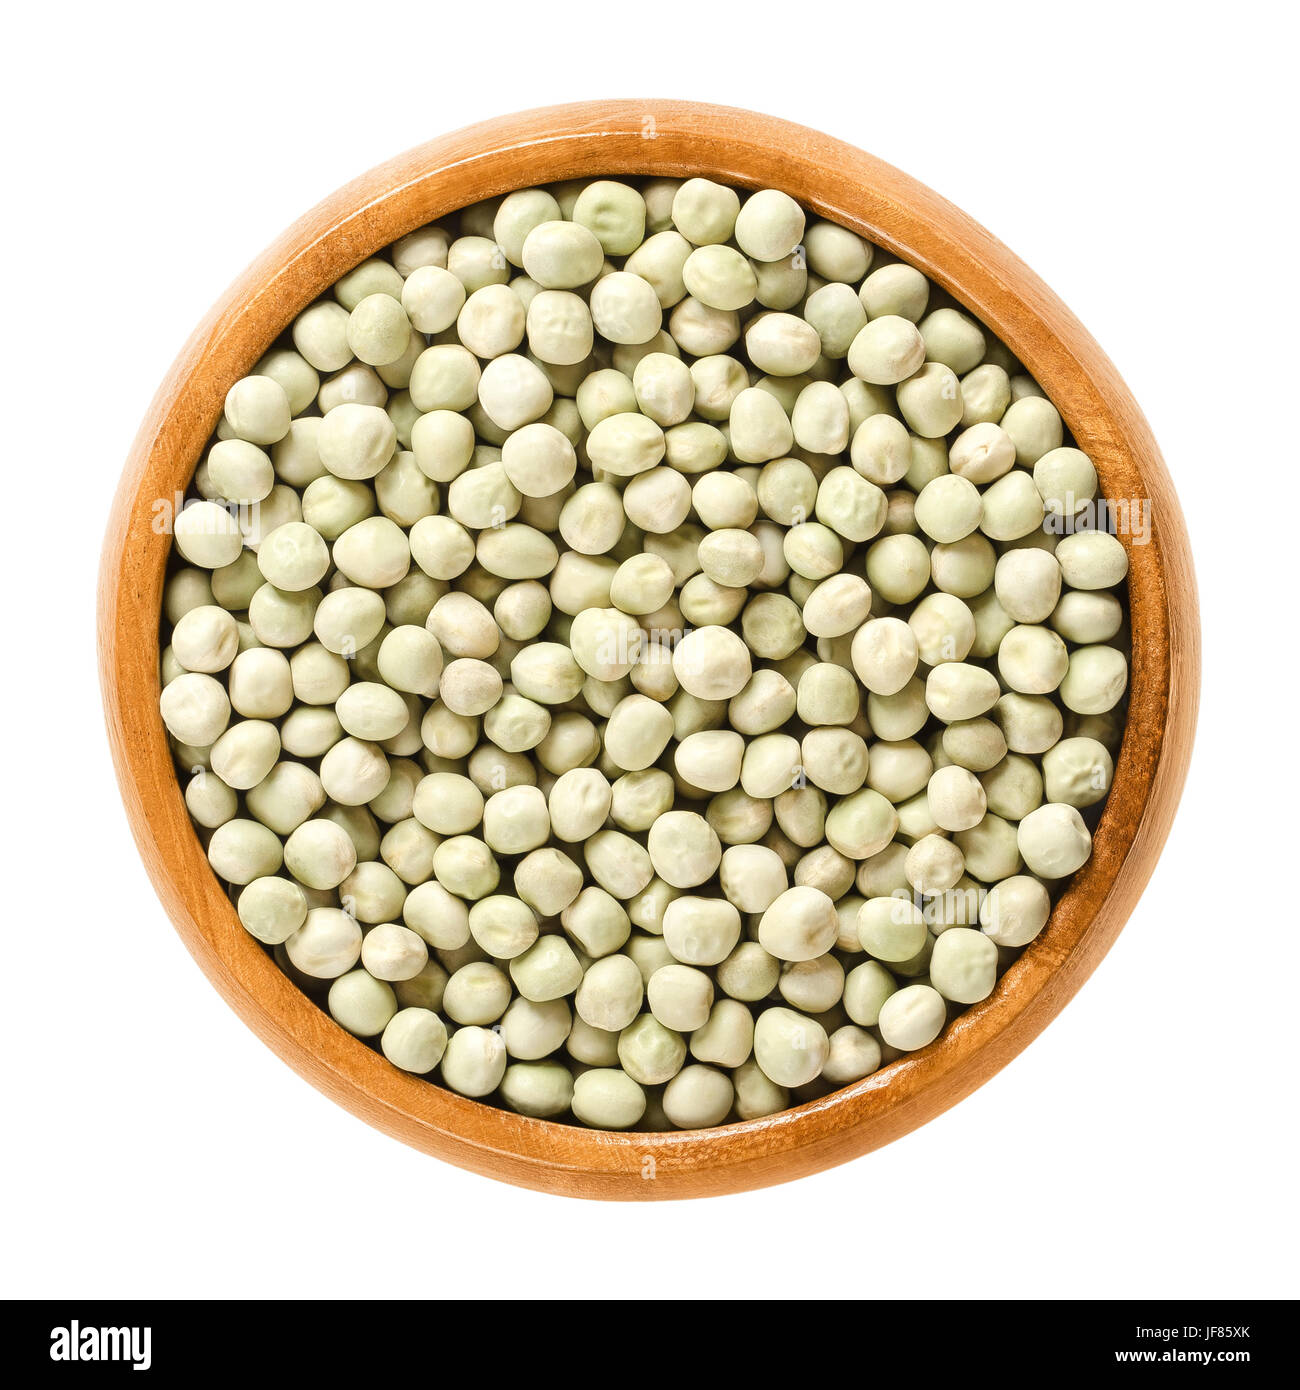 Getrocknete Erbsen in Holzschale. Kleine leichte grüne kugelförmige Samen aus den Schoten von Pisum Sativum, verwendet als Gemüse oder für die Aussaat. Stockfoto